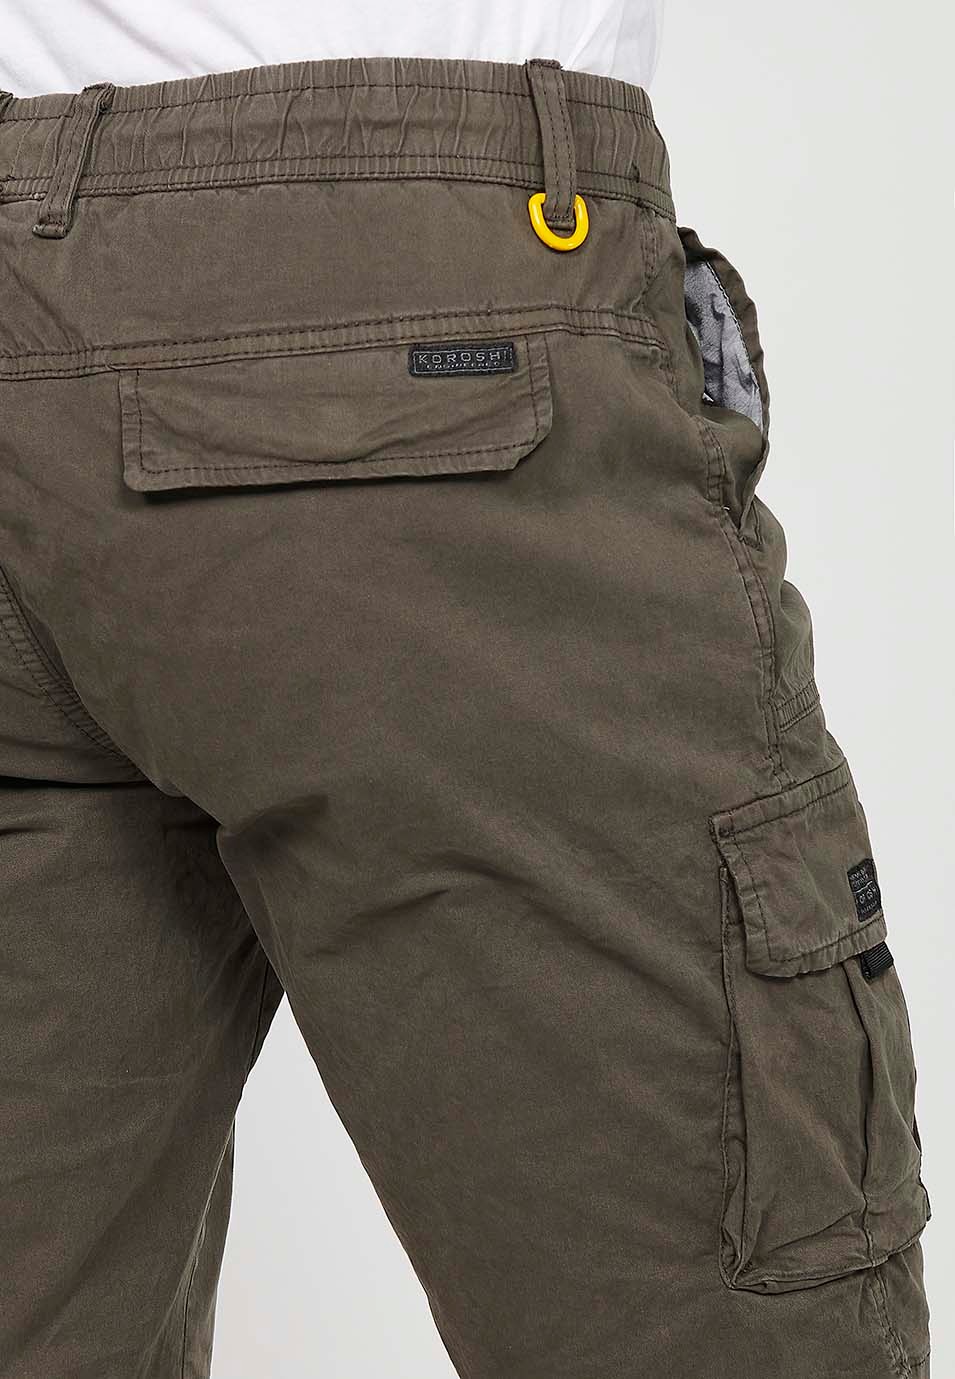 Pantalons curts càrrec amb Butxaques laterals amb solapa i Tancament davanter amb cremallera i botó Color Oliva per a Home